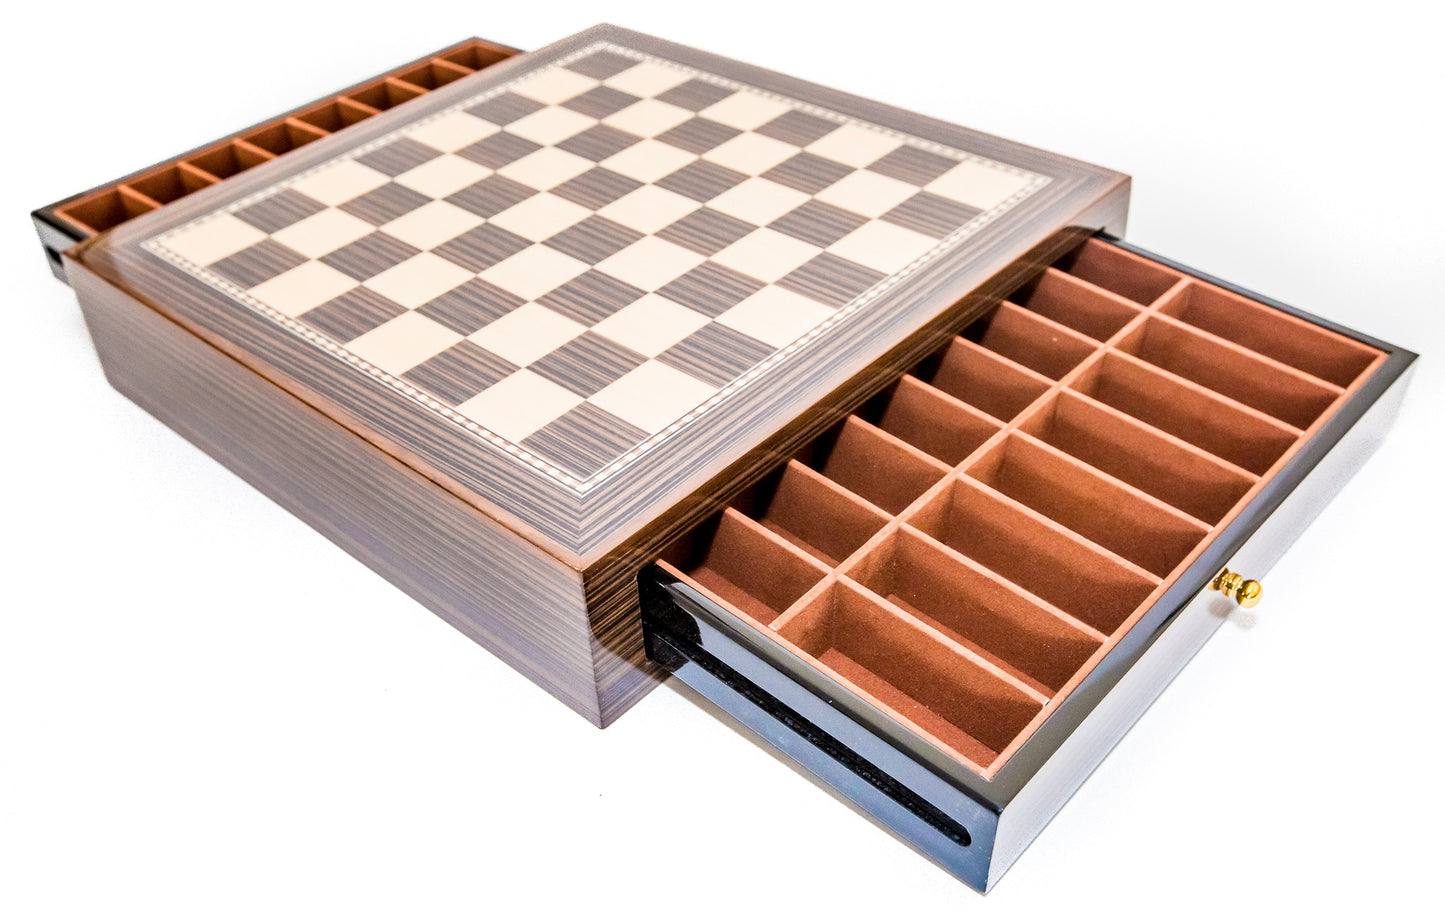 Deluxe Chess Board Case (open)